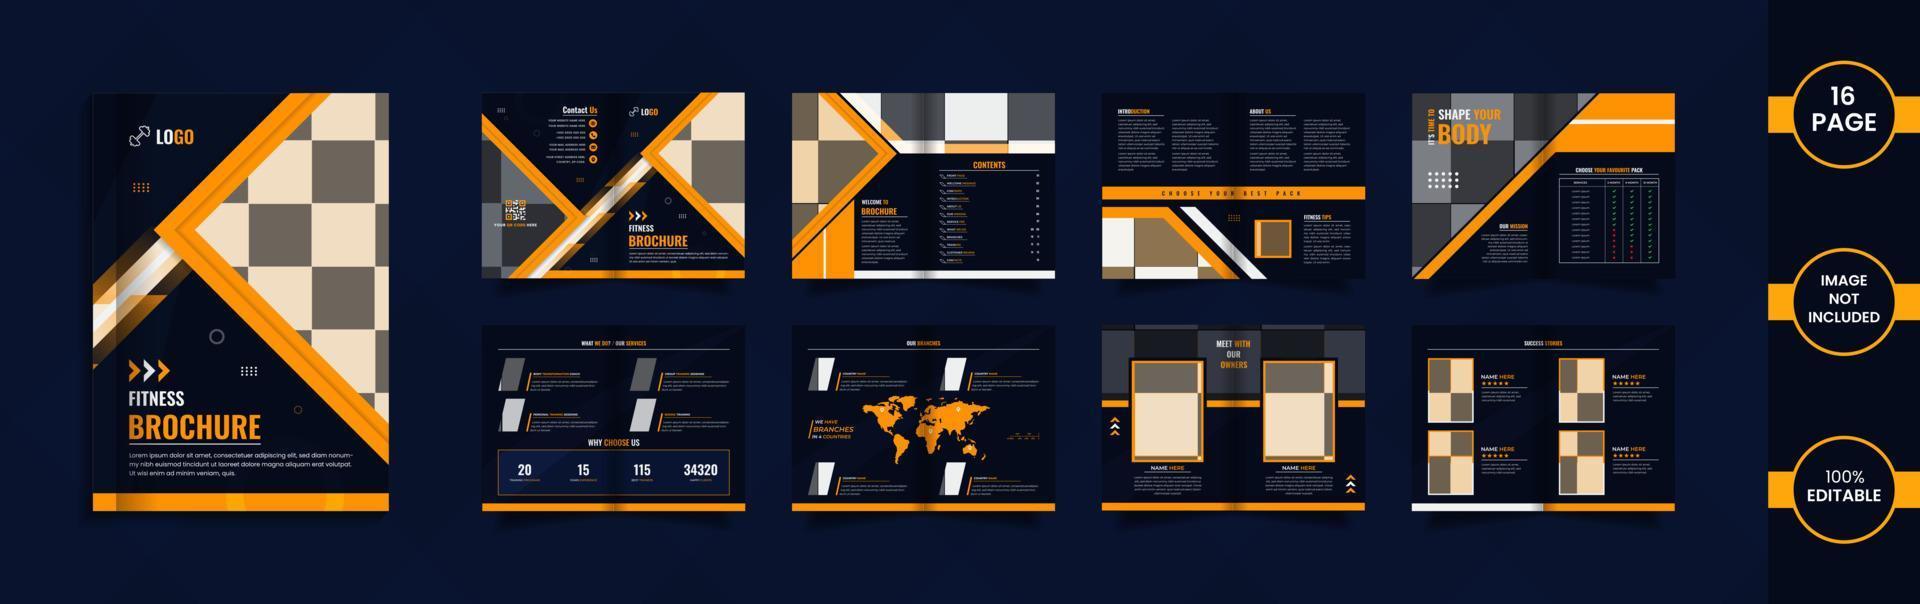 conception de brochures de remise en forme moderne de 16 pages avec des formes géométriques et des données de couleur jaune et bleue. vecteur